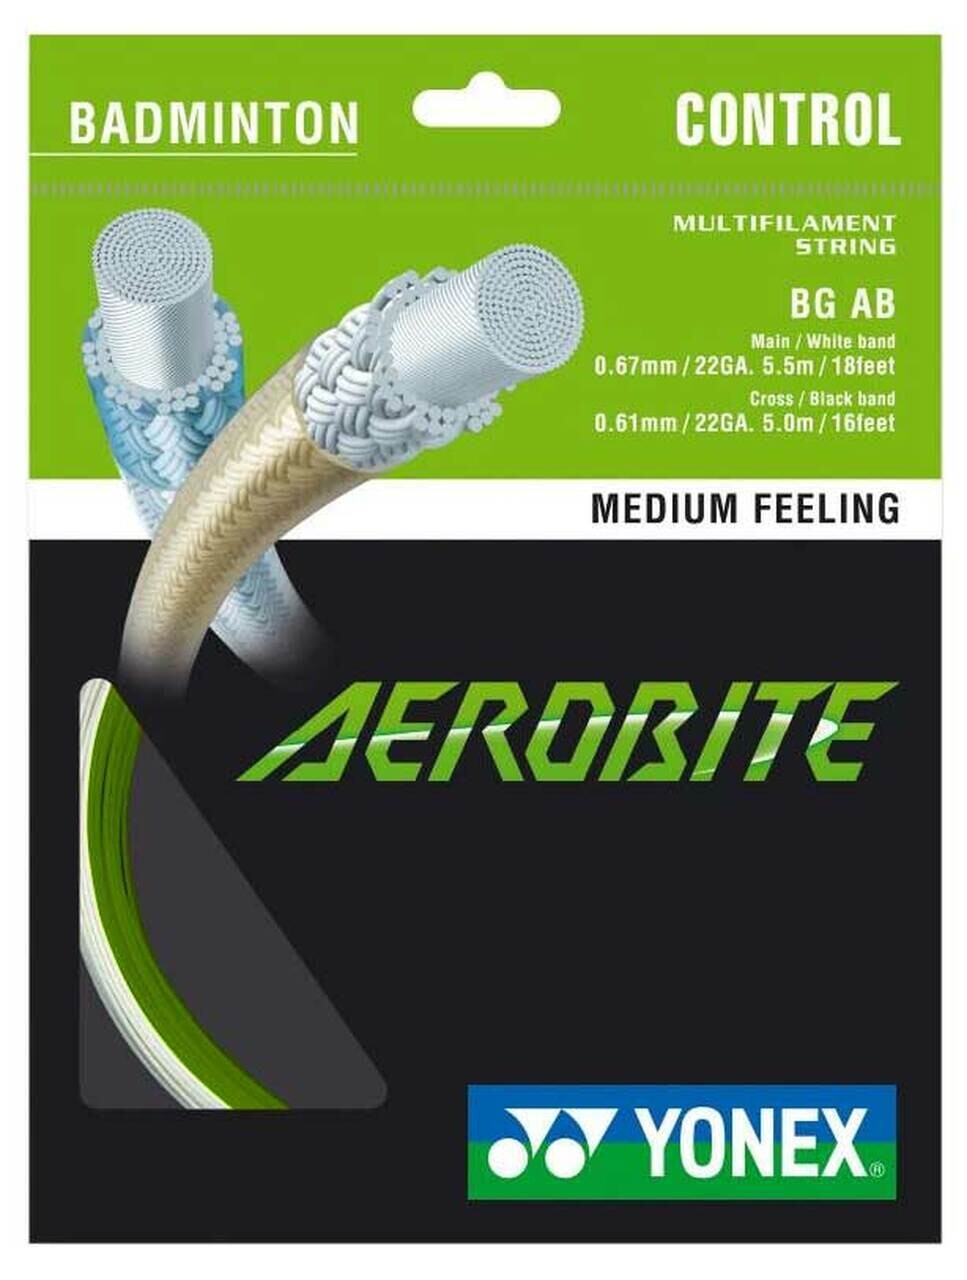 Yonex Aerobite Hybrid Badminton String Set - Green/White